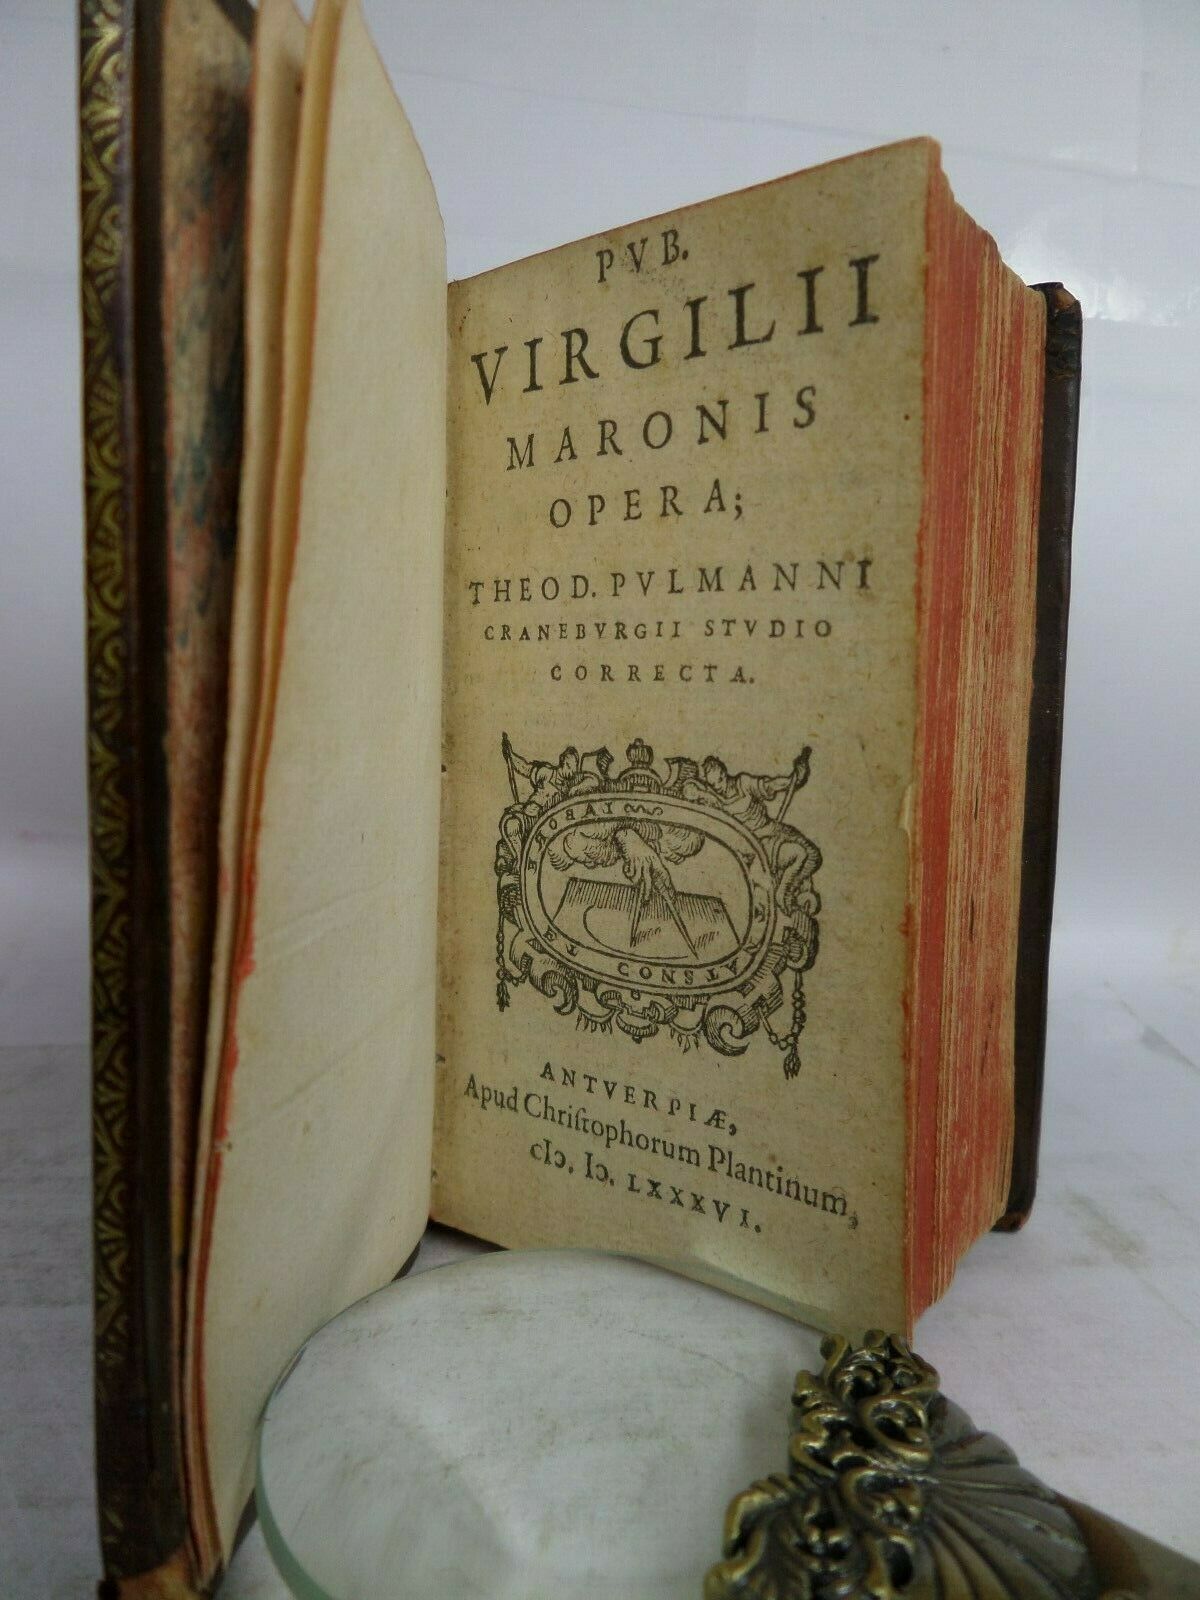 THE WORKS OF VIRGIL, HORACE, JUVENAL & PERSIUS 1586 COEVAL BINDING 3 WORKS IN 1